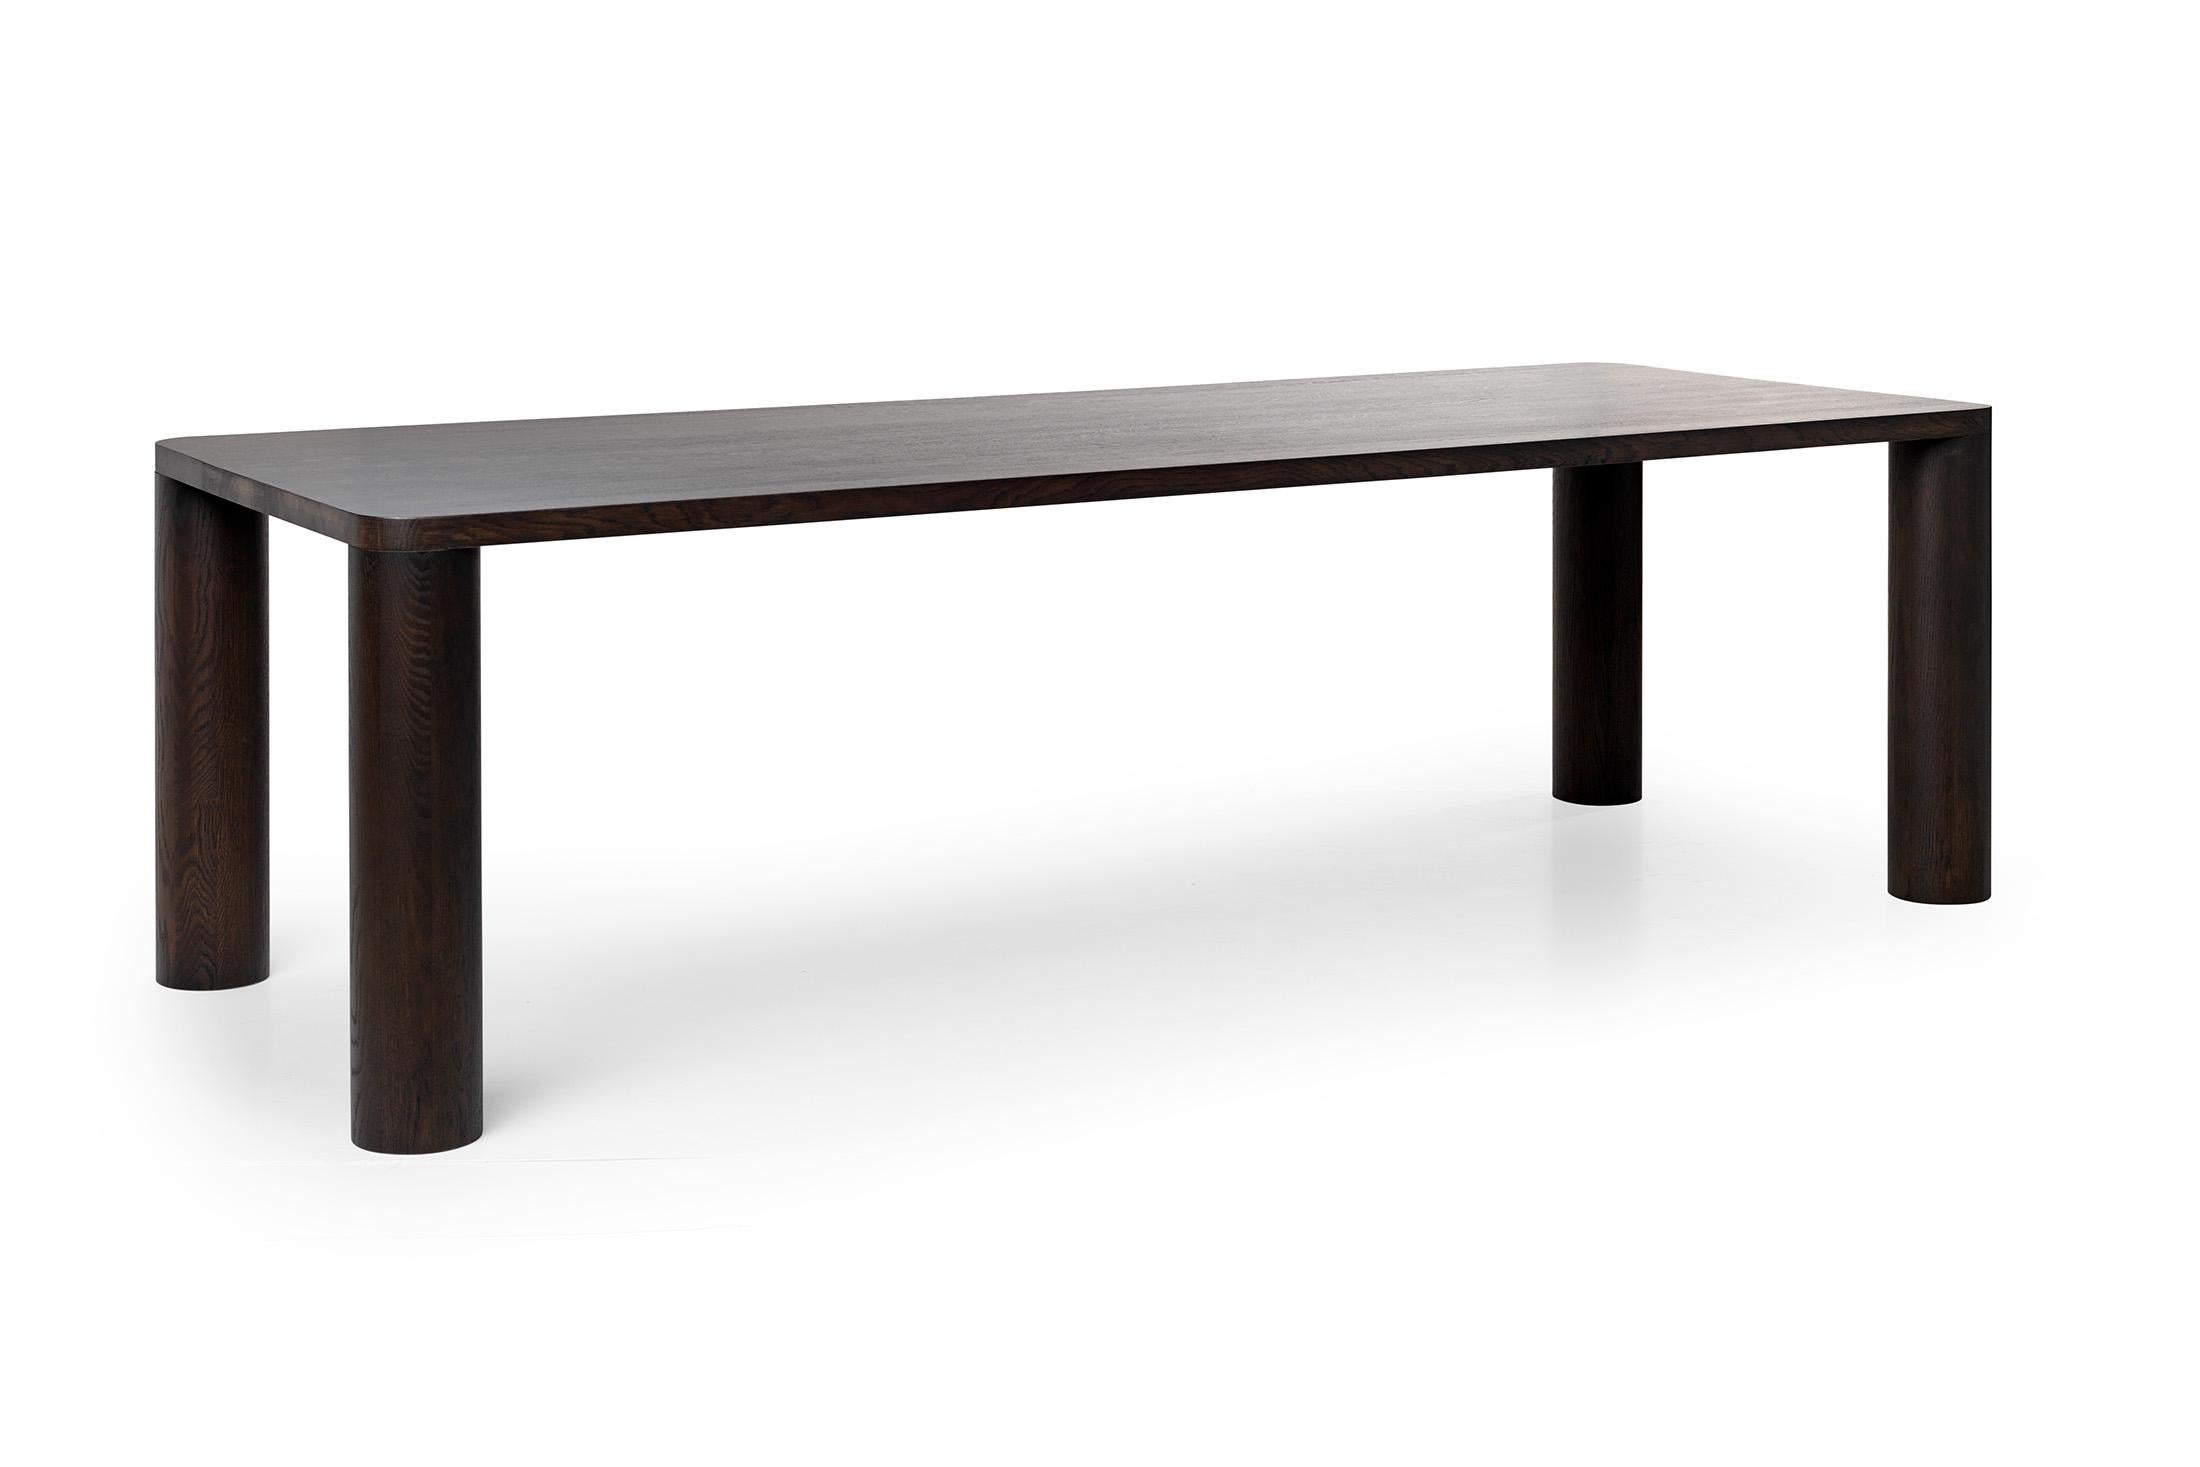 Cette table robuste respire la simplicité pure. Nous laissons la splendeur de la nature et du bois parler d'eux-mêmes. La perfection jusque dans les moindres détails !

La table est tout à fait solide et élégante, mais grâce aux pieds ronds qui